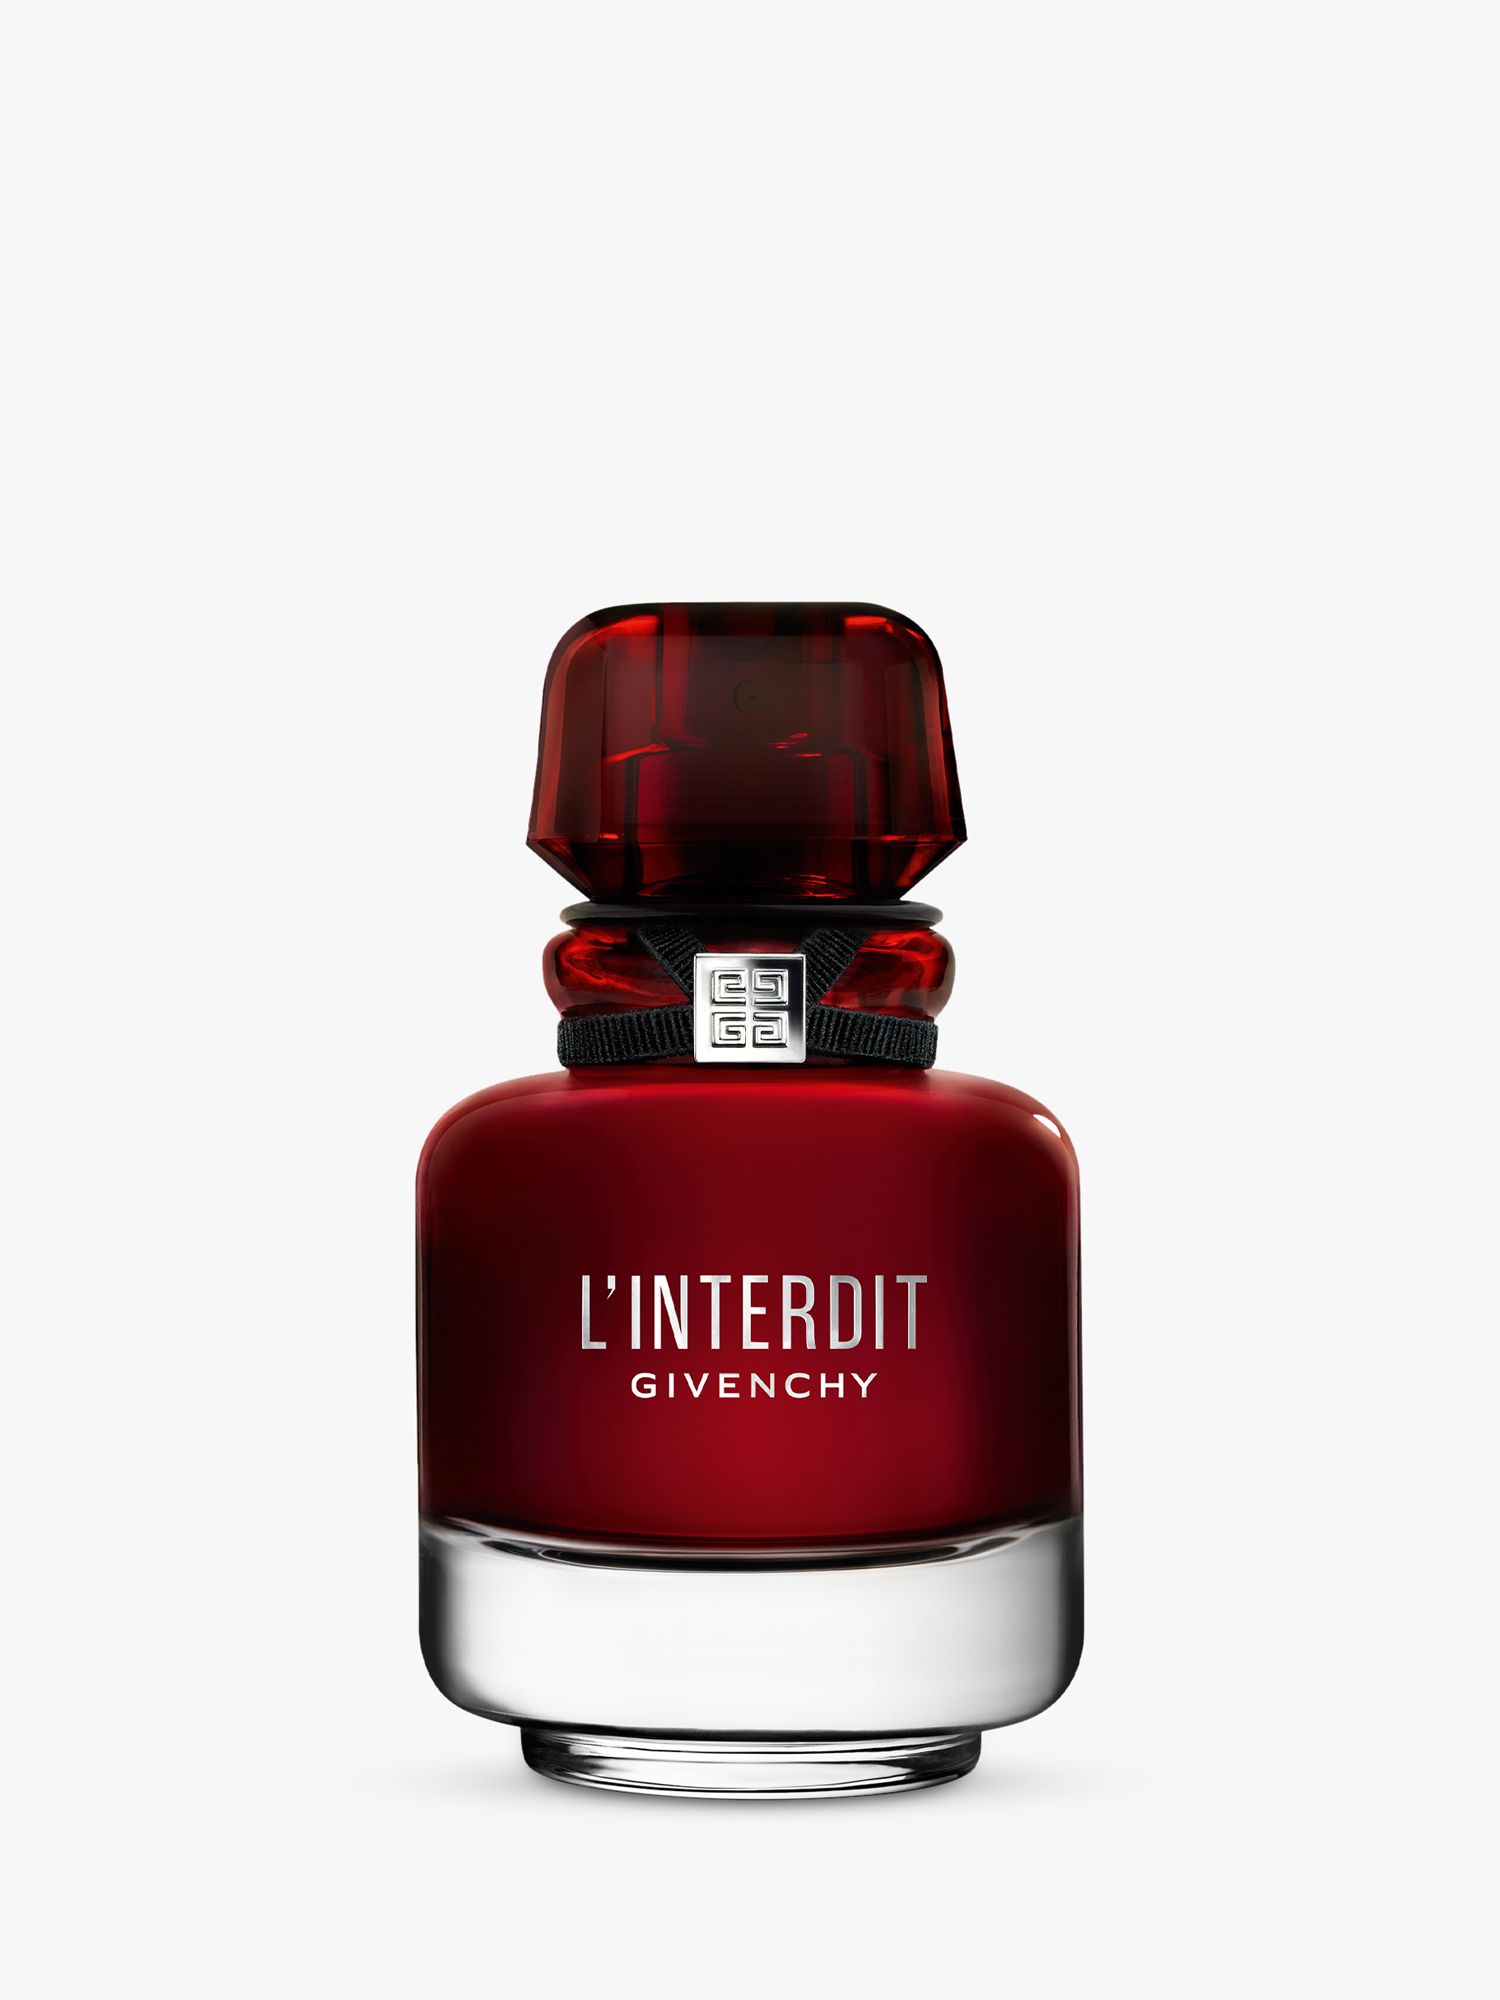 Givenchy L'Interdit Eau de Parfum Rouge, 35ml at John Lewis & Partners